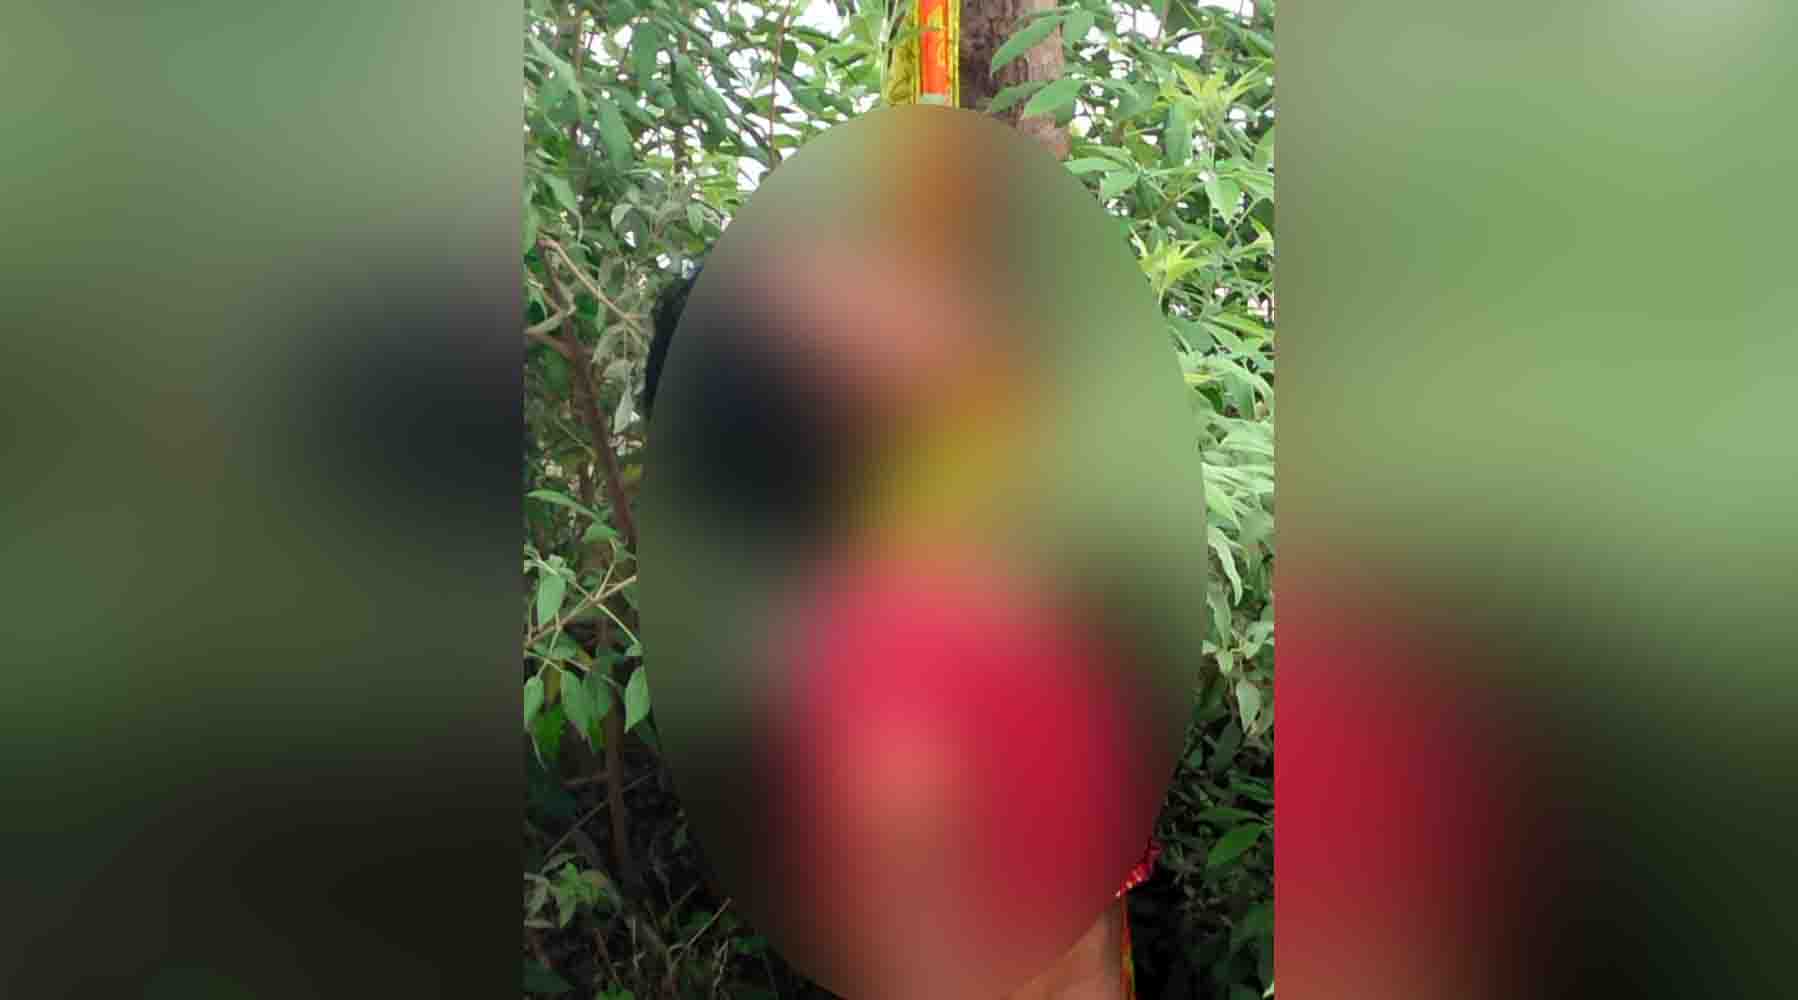 रेलवे स्टेशन के समीप पेड़ से लटकता मिला महिला का शव,जांच में जुटी पुलिस।